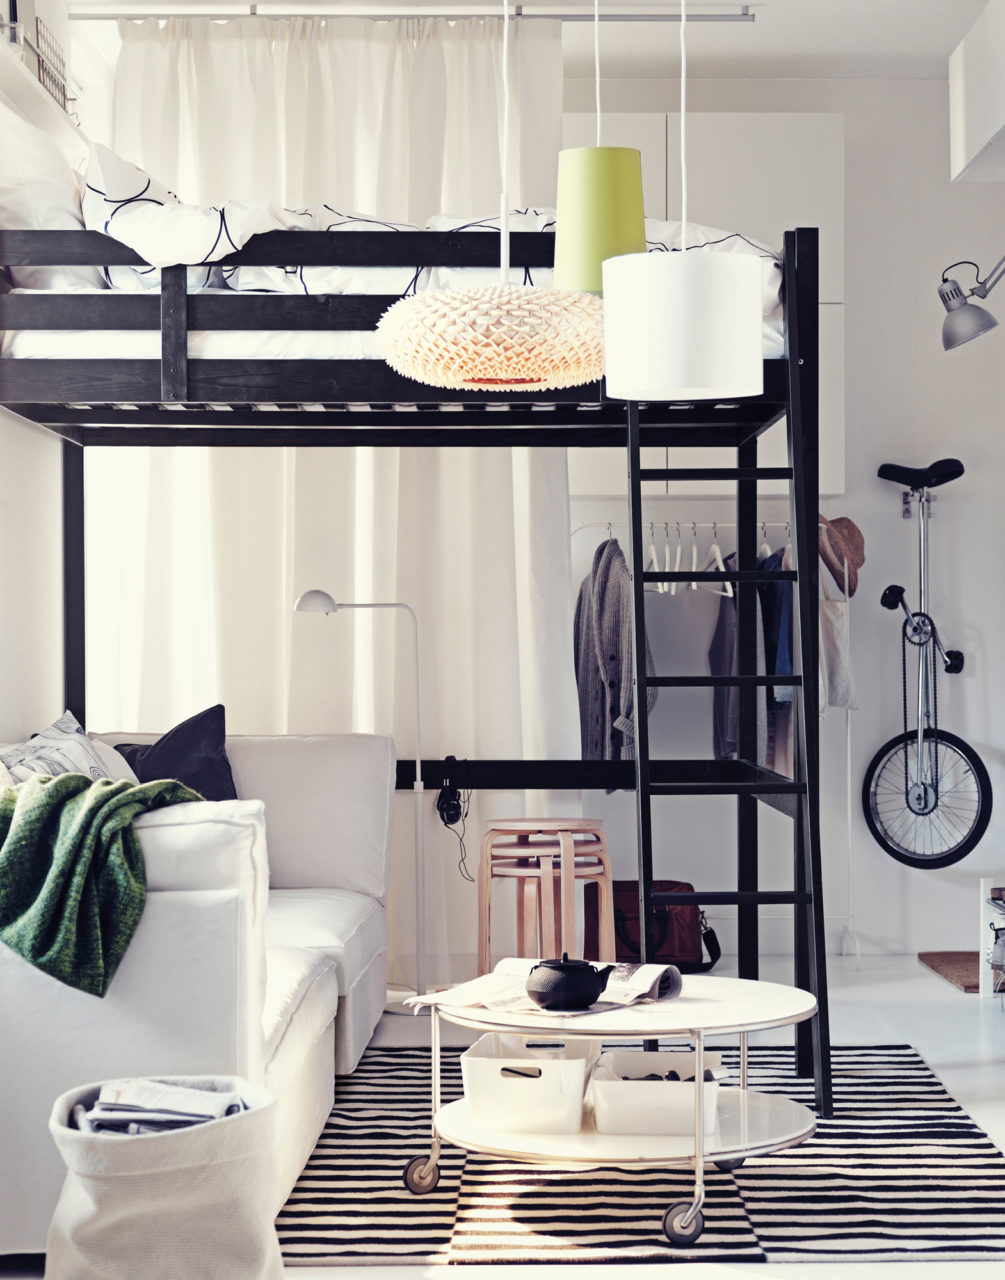 Habitación luminosa con sofá blanco bajo cama elevada negra de estilo ligero. Varias prendas y un uniciclo en la pared.